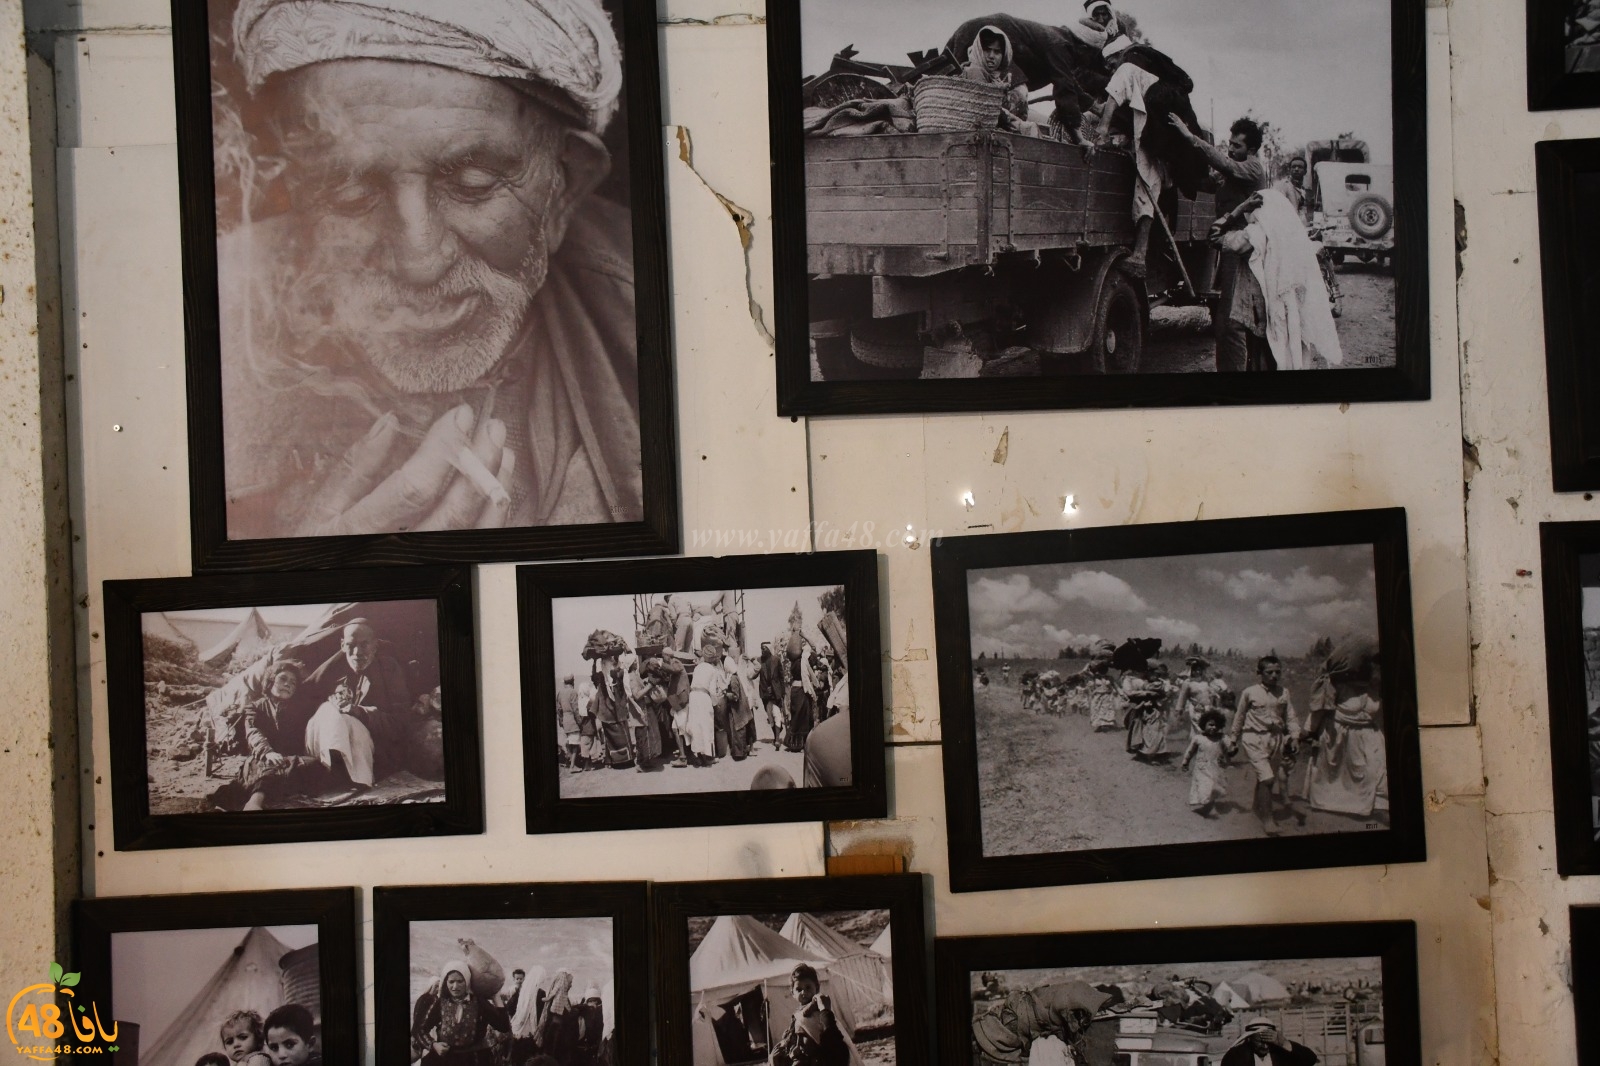  فيديو: جولة في معرض الصور التاريخية في ميناء يافا ... لا تفوتوا الفرصة